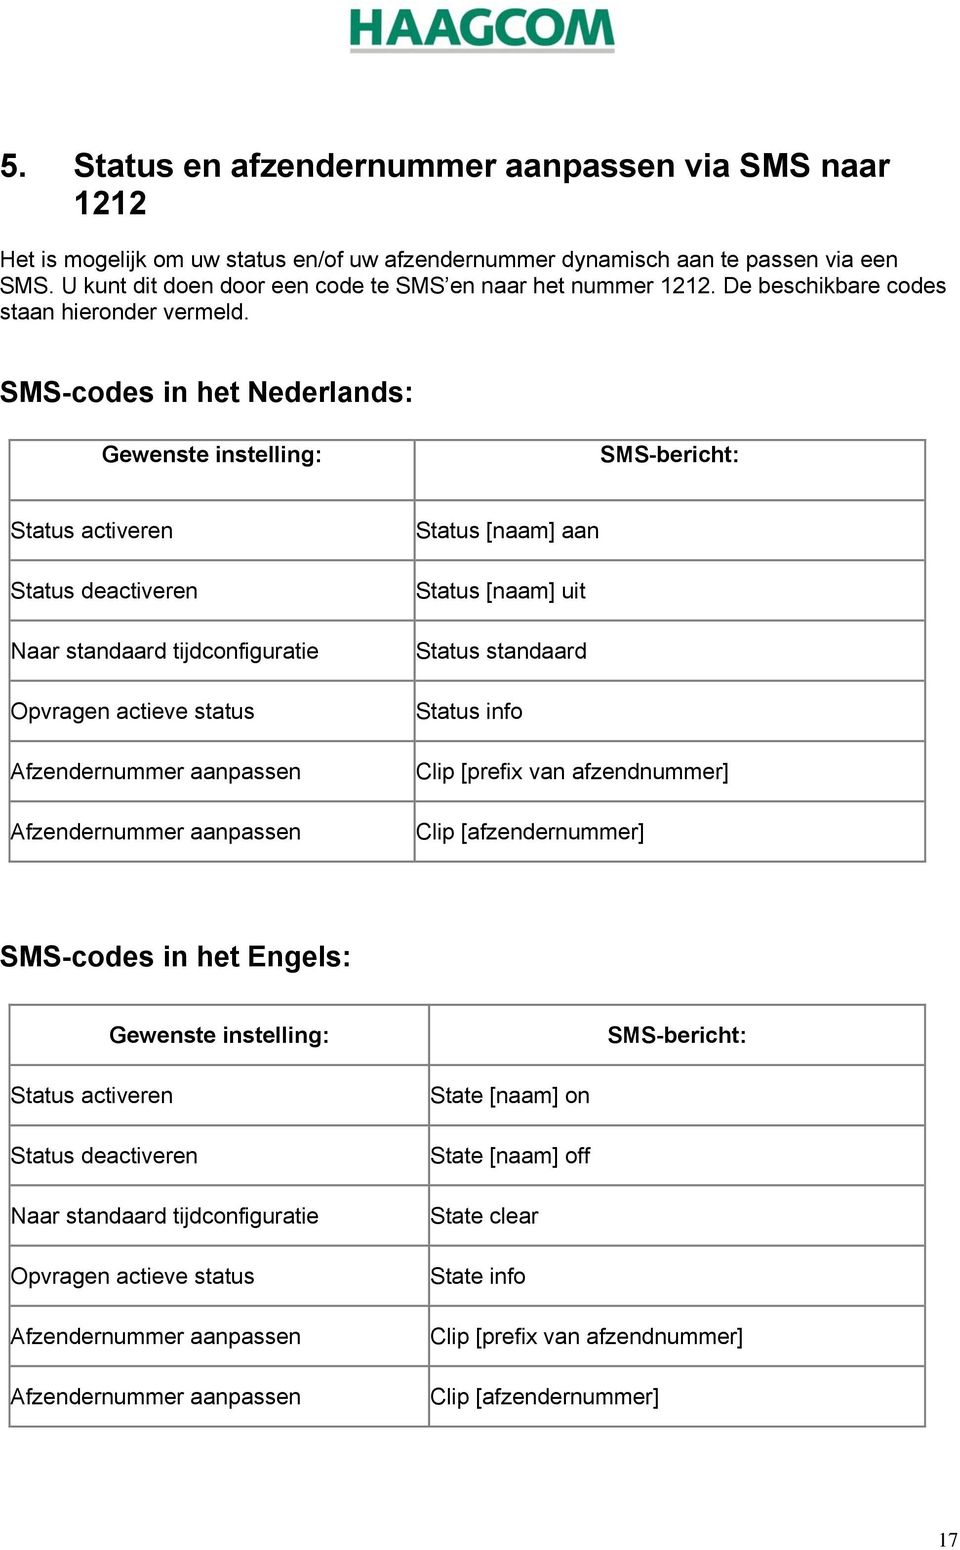 SMS-codes in het Nederlands: Gewenste instelling: SMS-bericht: Status activeren Status deactiveren Naar standaard tijdconfiguratie Opvragen actieve status Afzendernummer aanpassen Afzendernummer